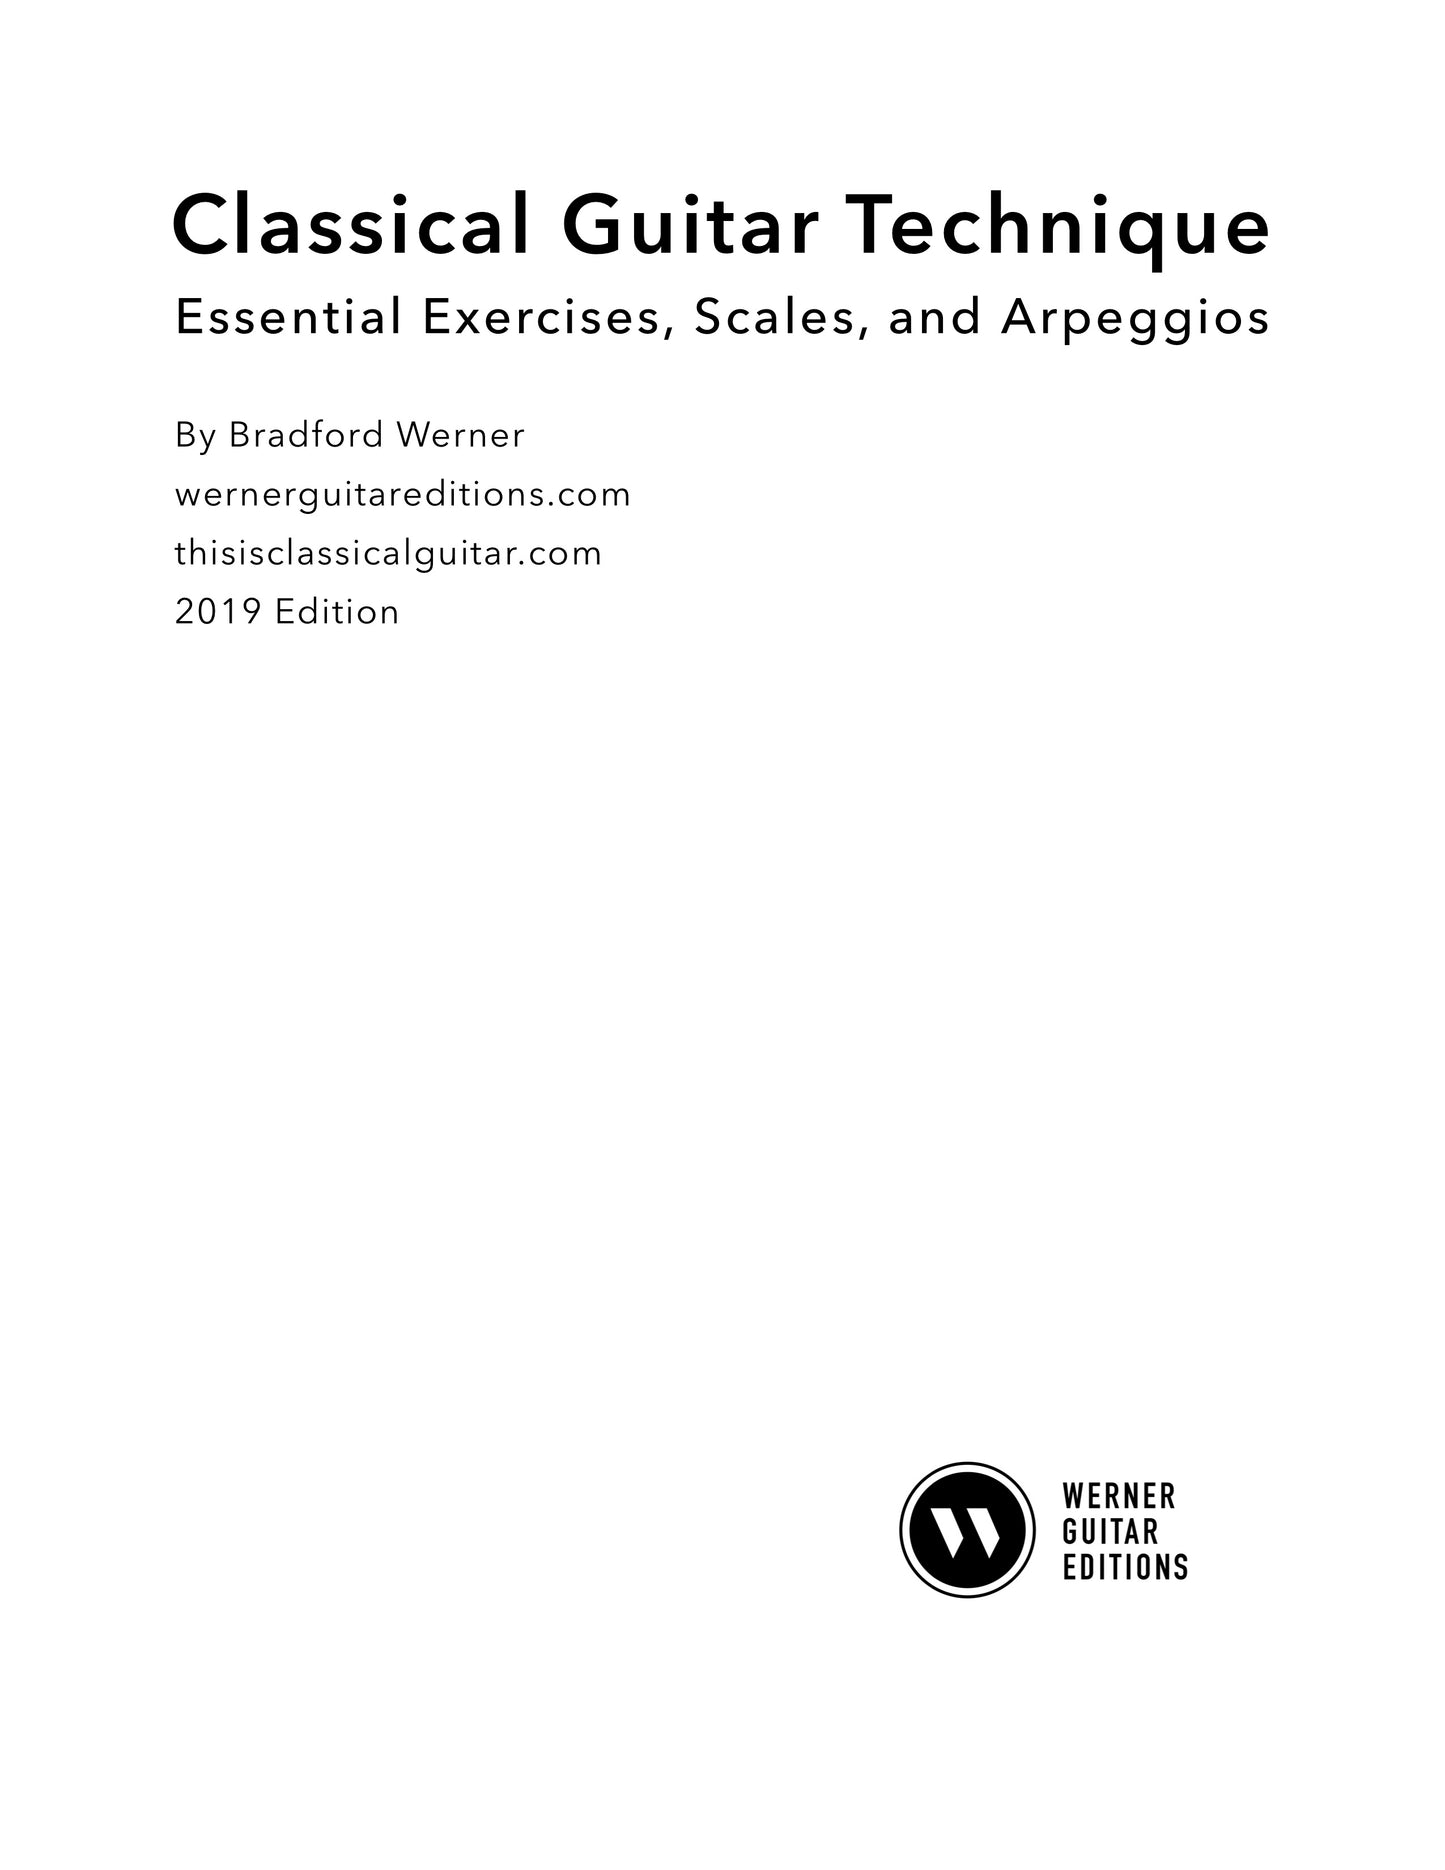 Classical Guitar Technique: Essential Exercises, Scales, and Arpeggios (PDF)